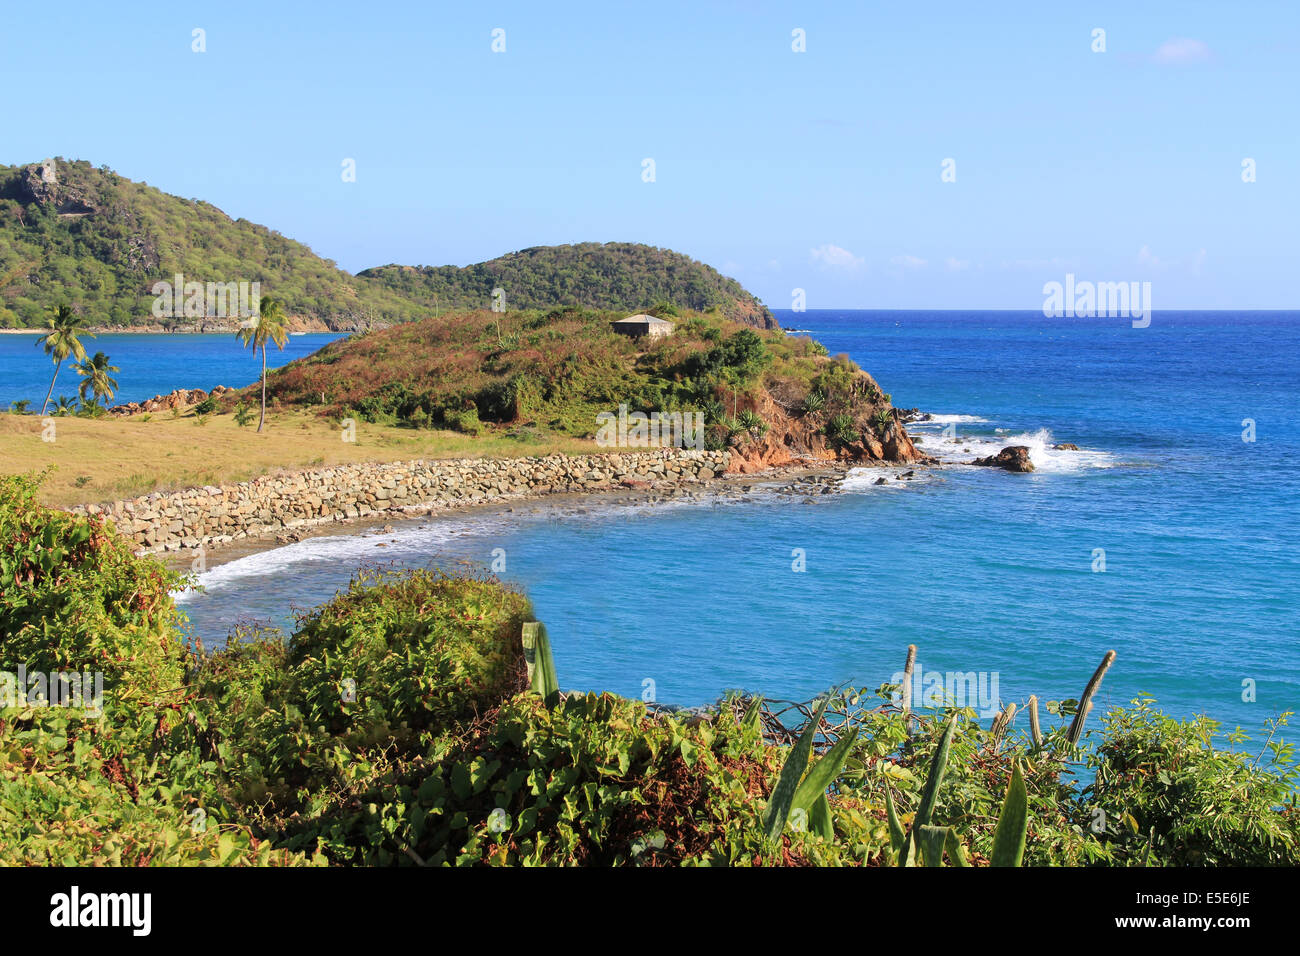 Côte Rocheuse en Antigua et Barbuda dans les Caraïbes Petites Antilles Antilles. Banque D'Images